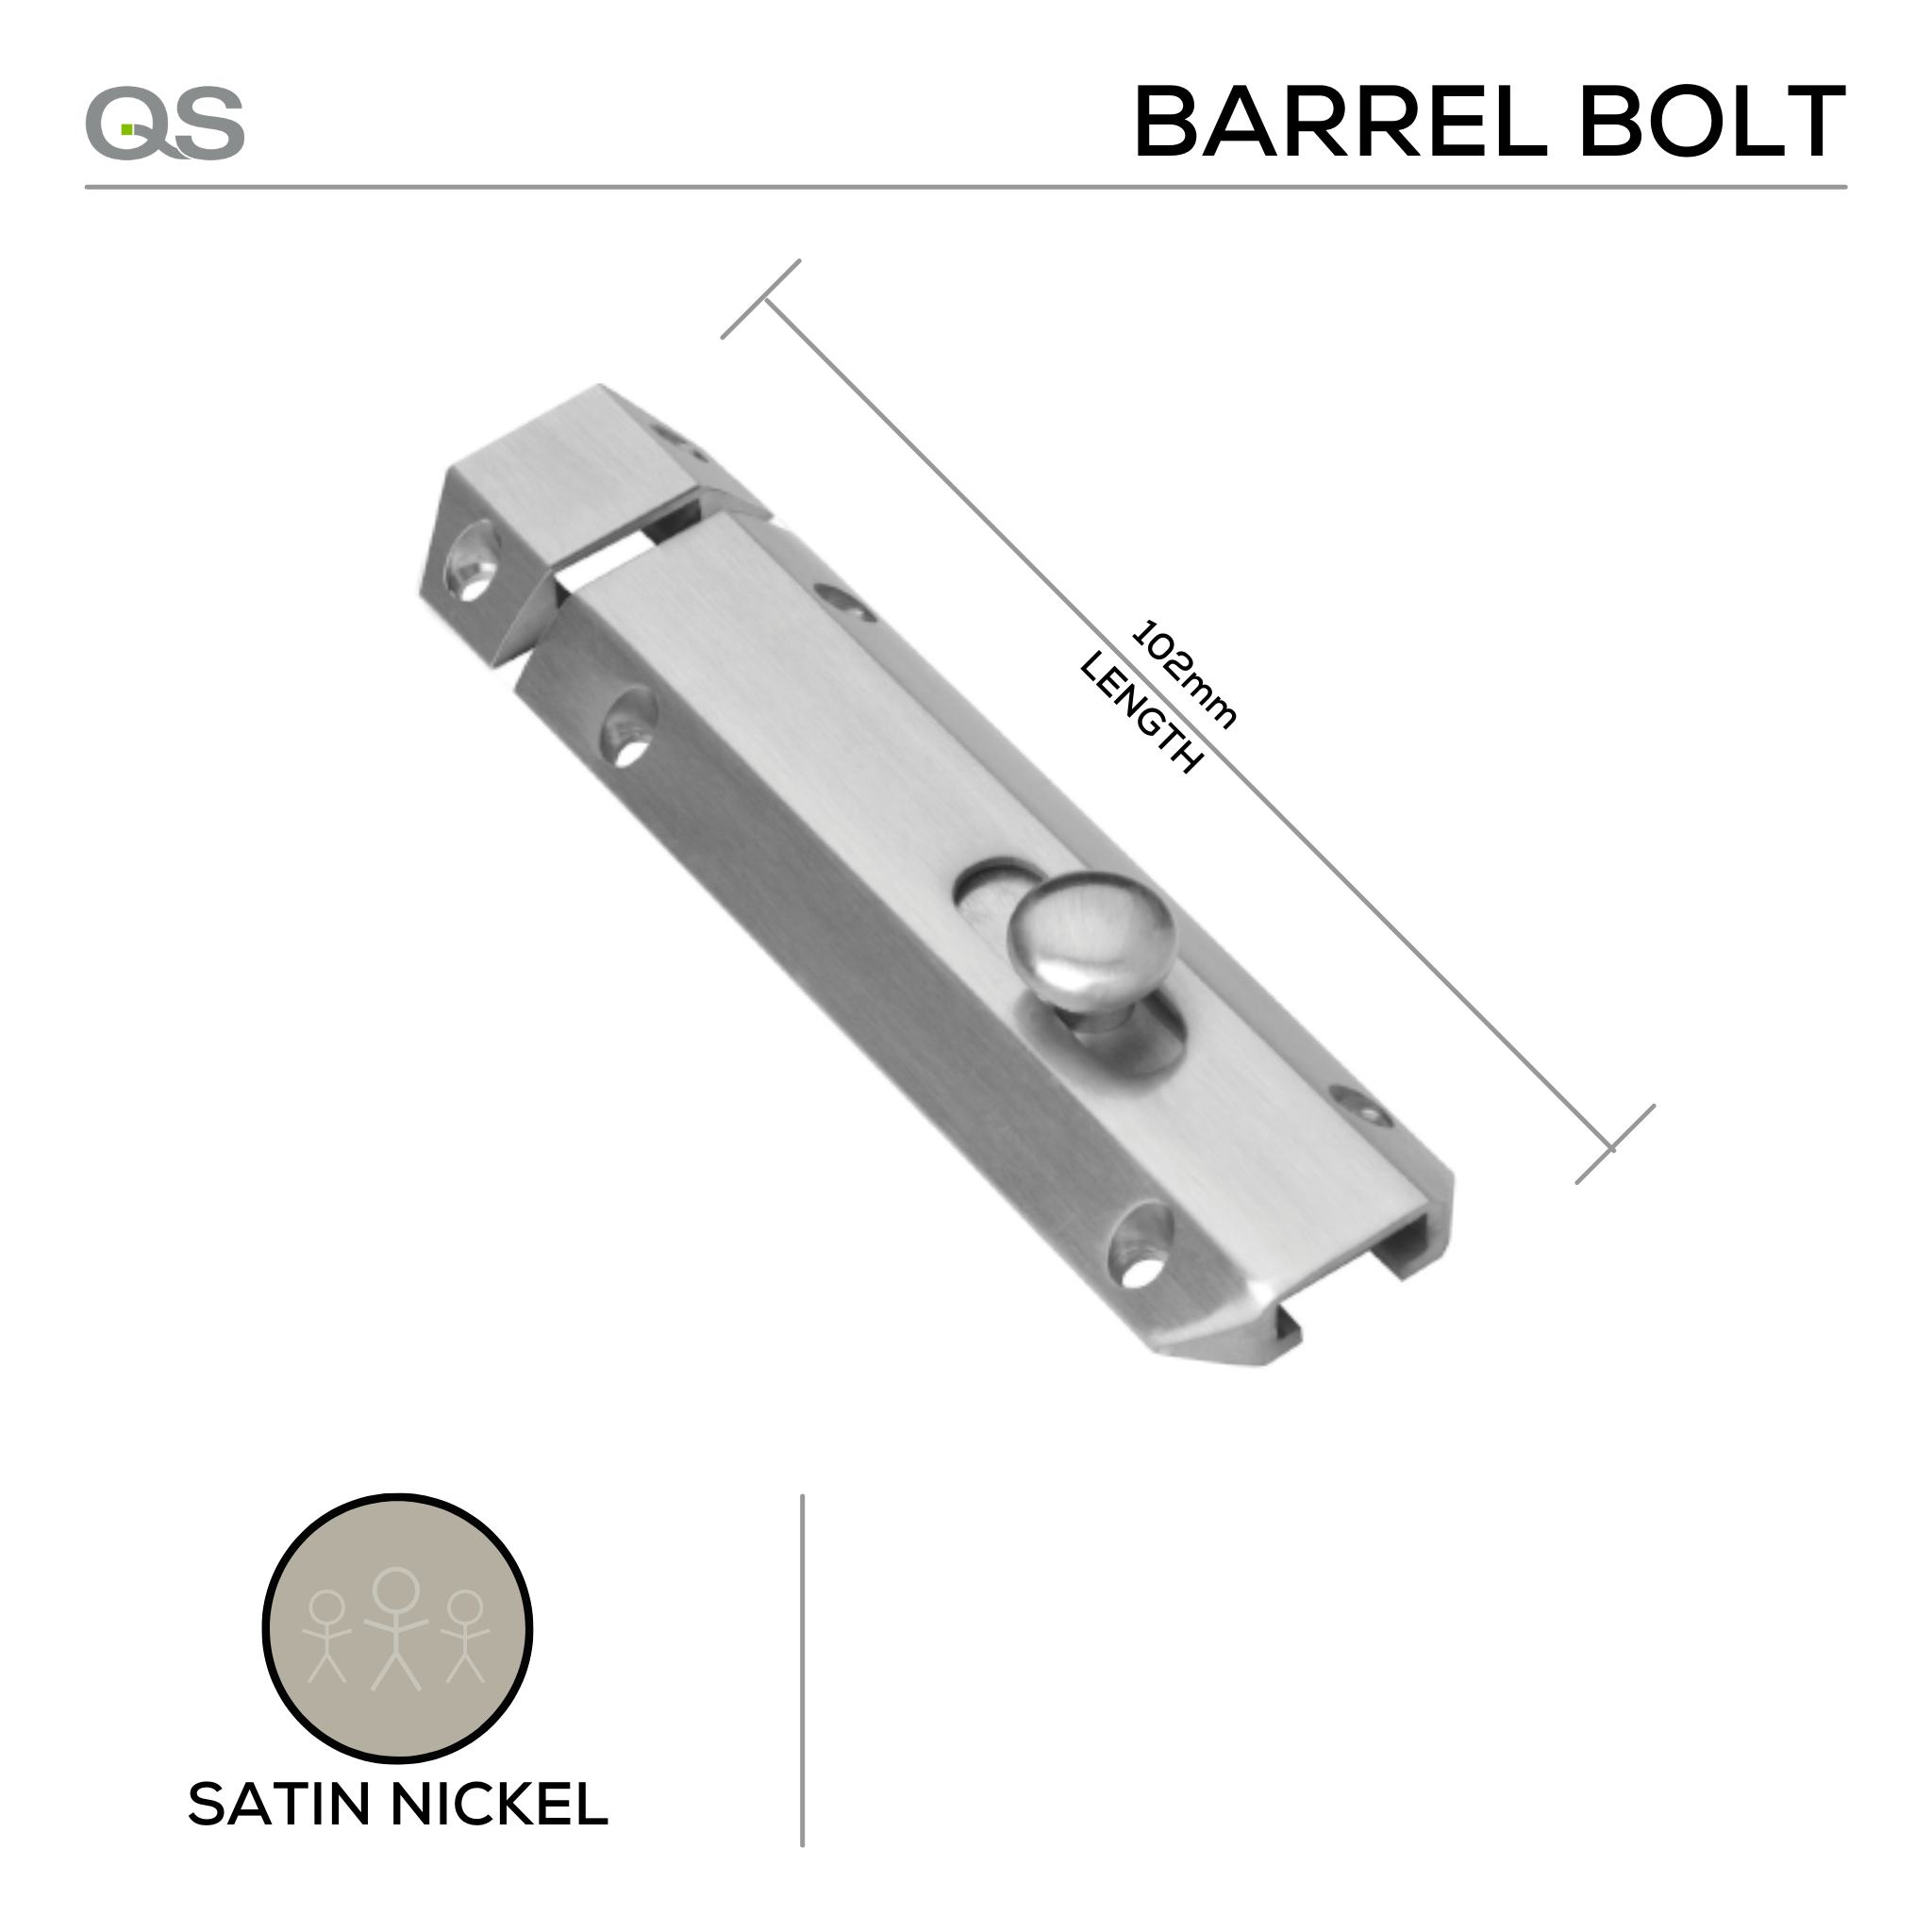 QS4431/2 102, Barrel Bolt, 102mm (l), Satin Nickel, QS